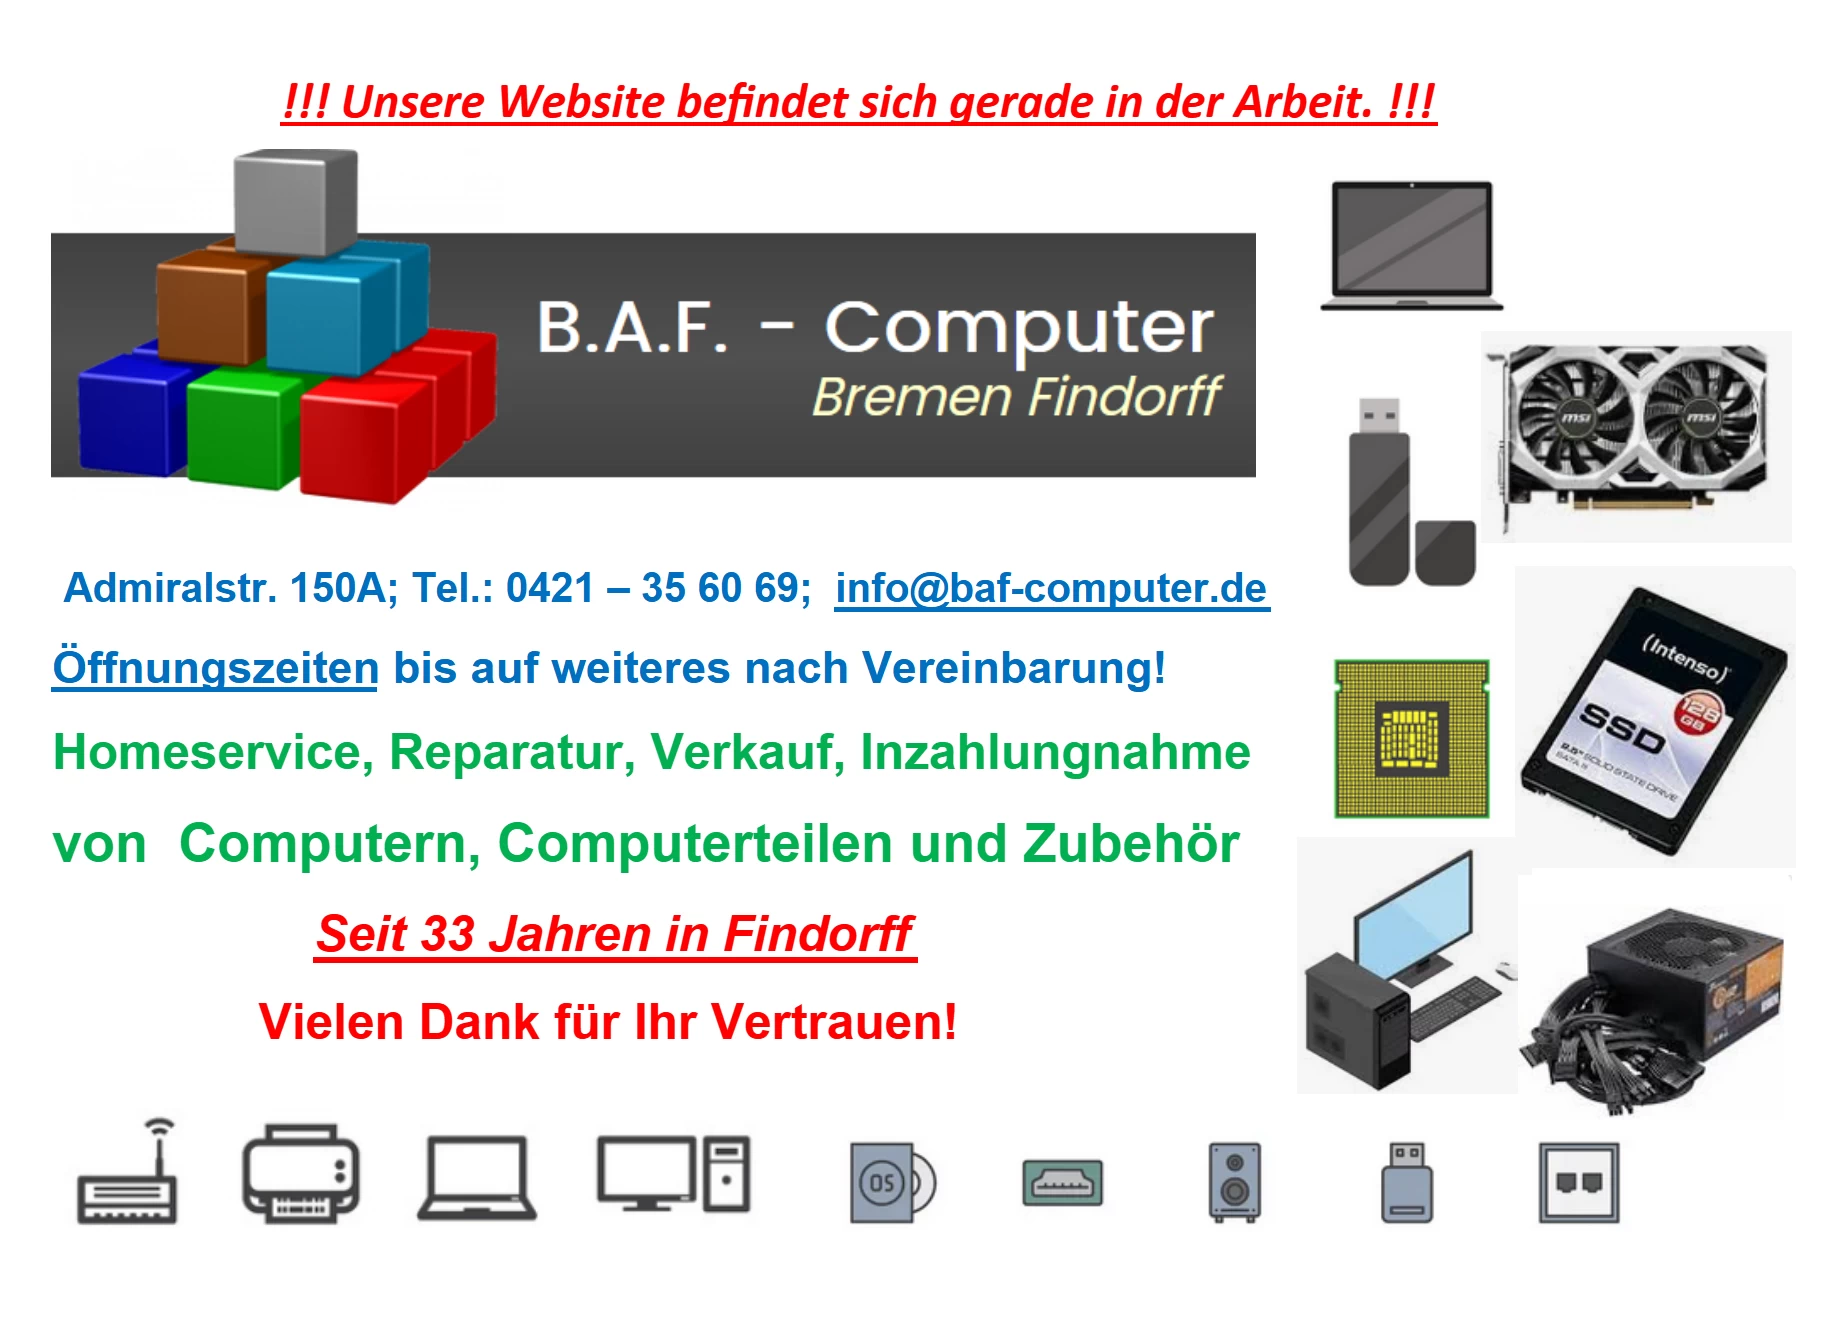 B.A.F. Computer